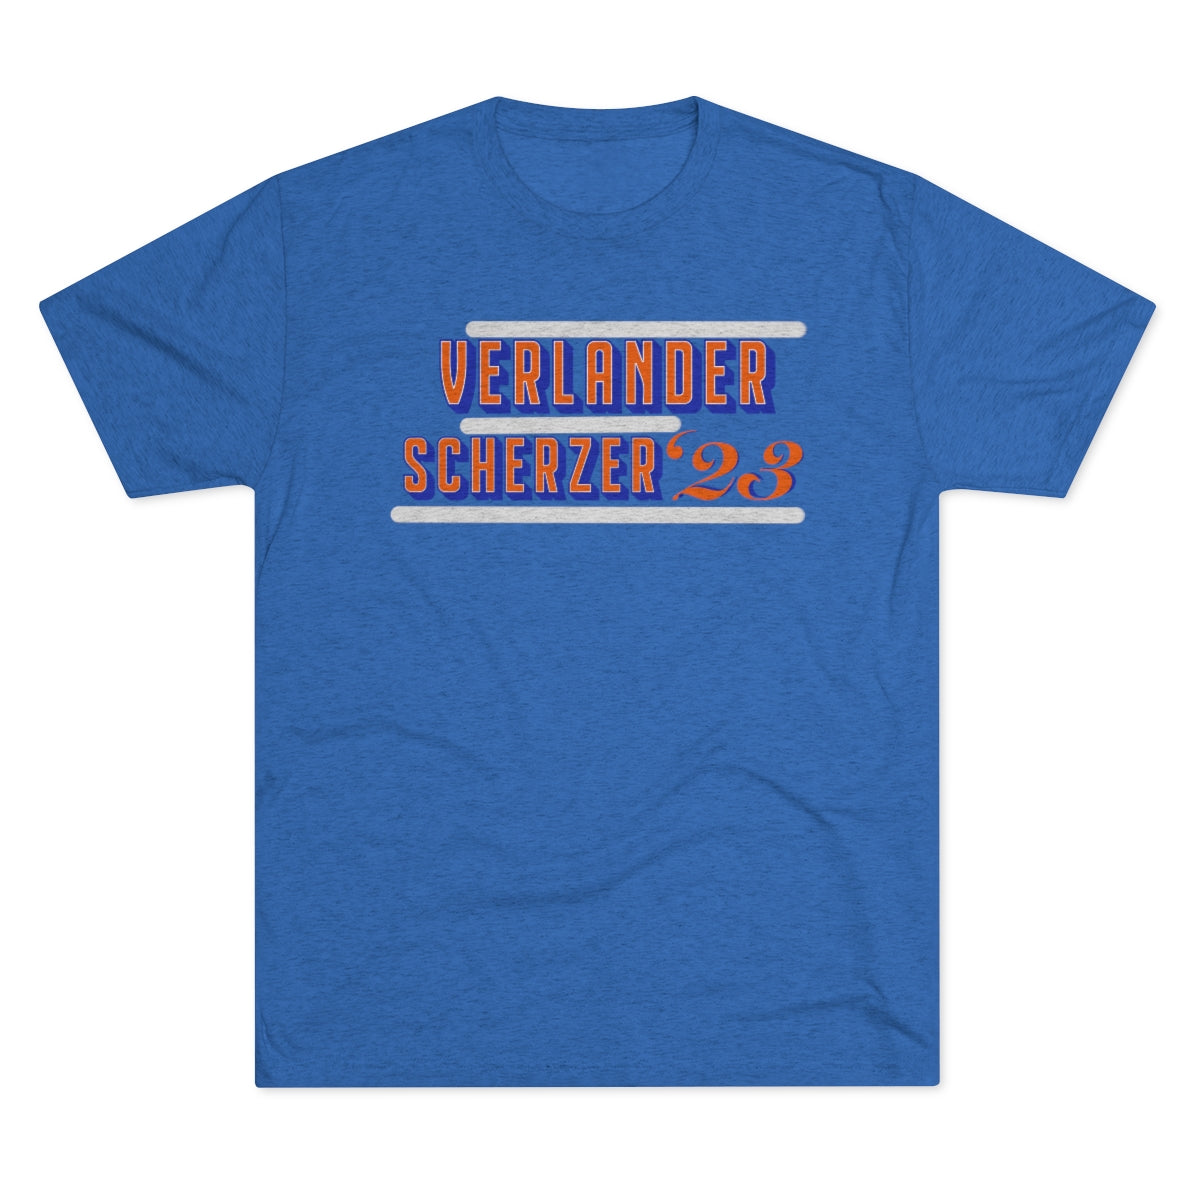 Mets Verlander Scherzer ‘23 Shirt - IsGoodBrand